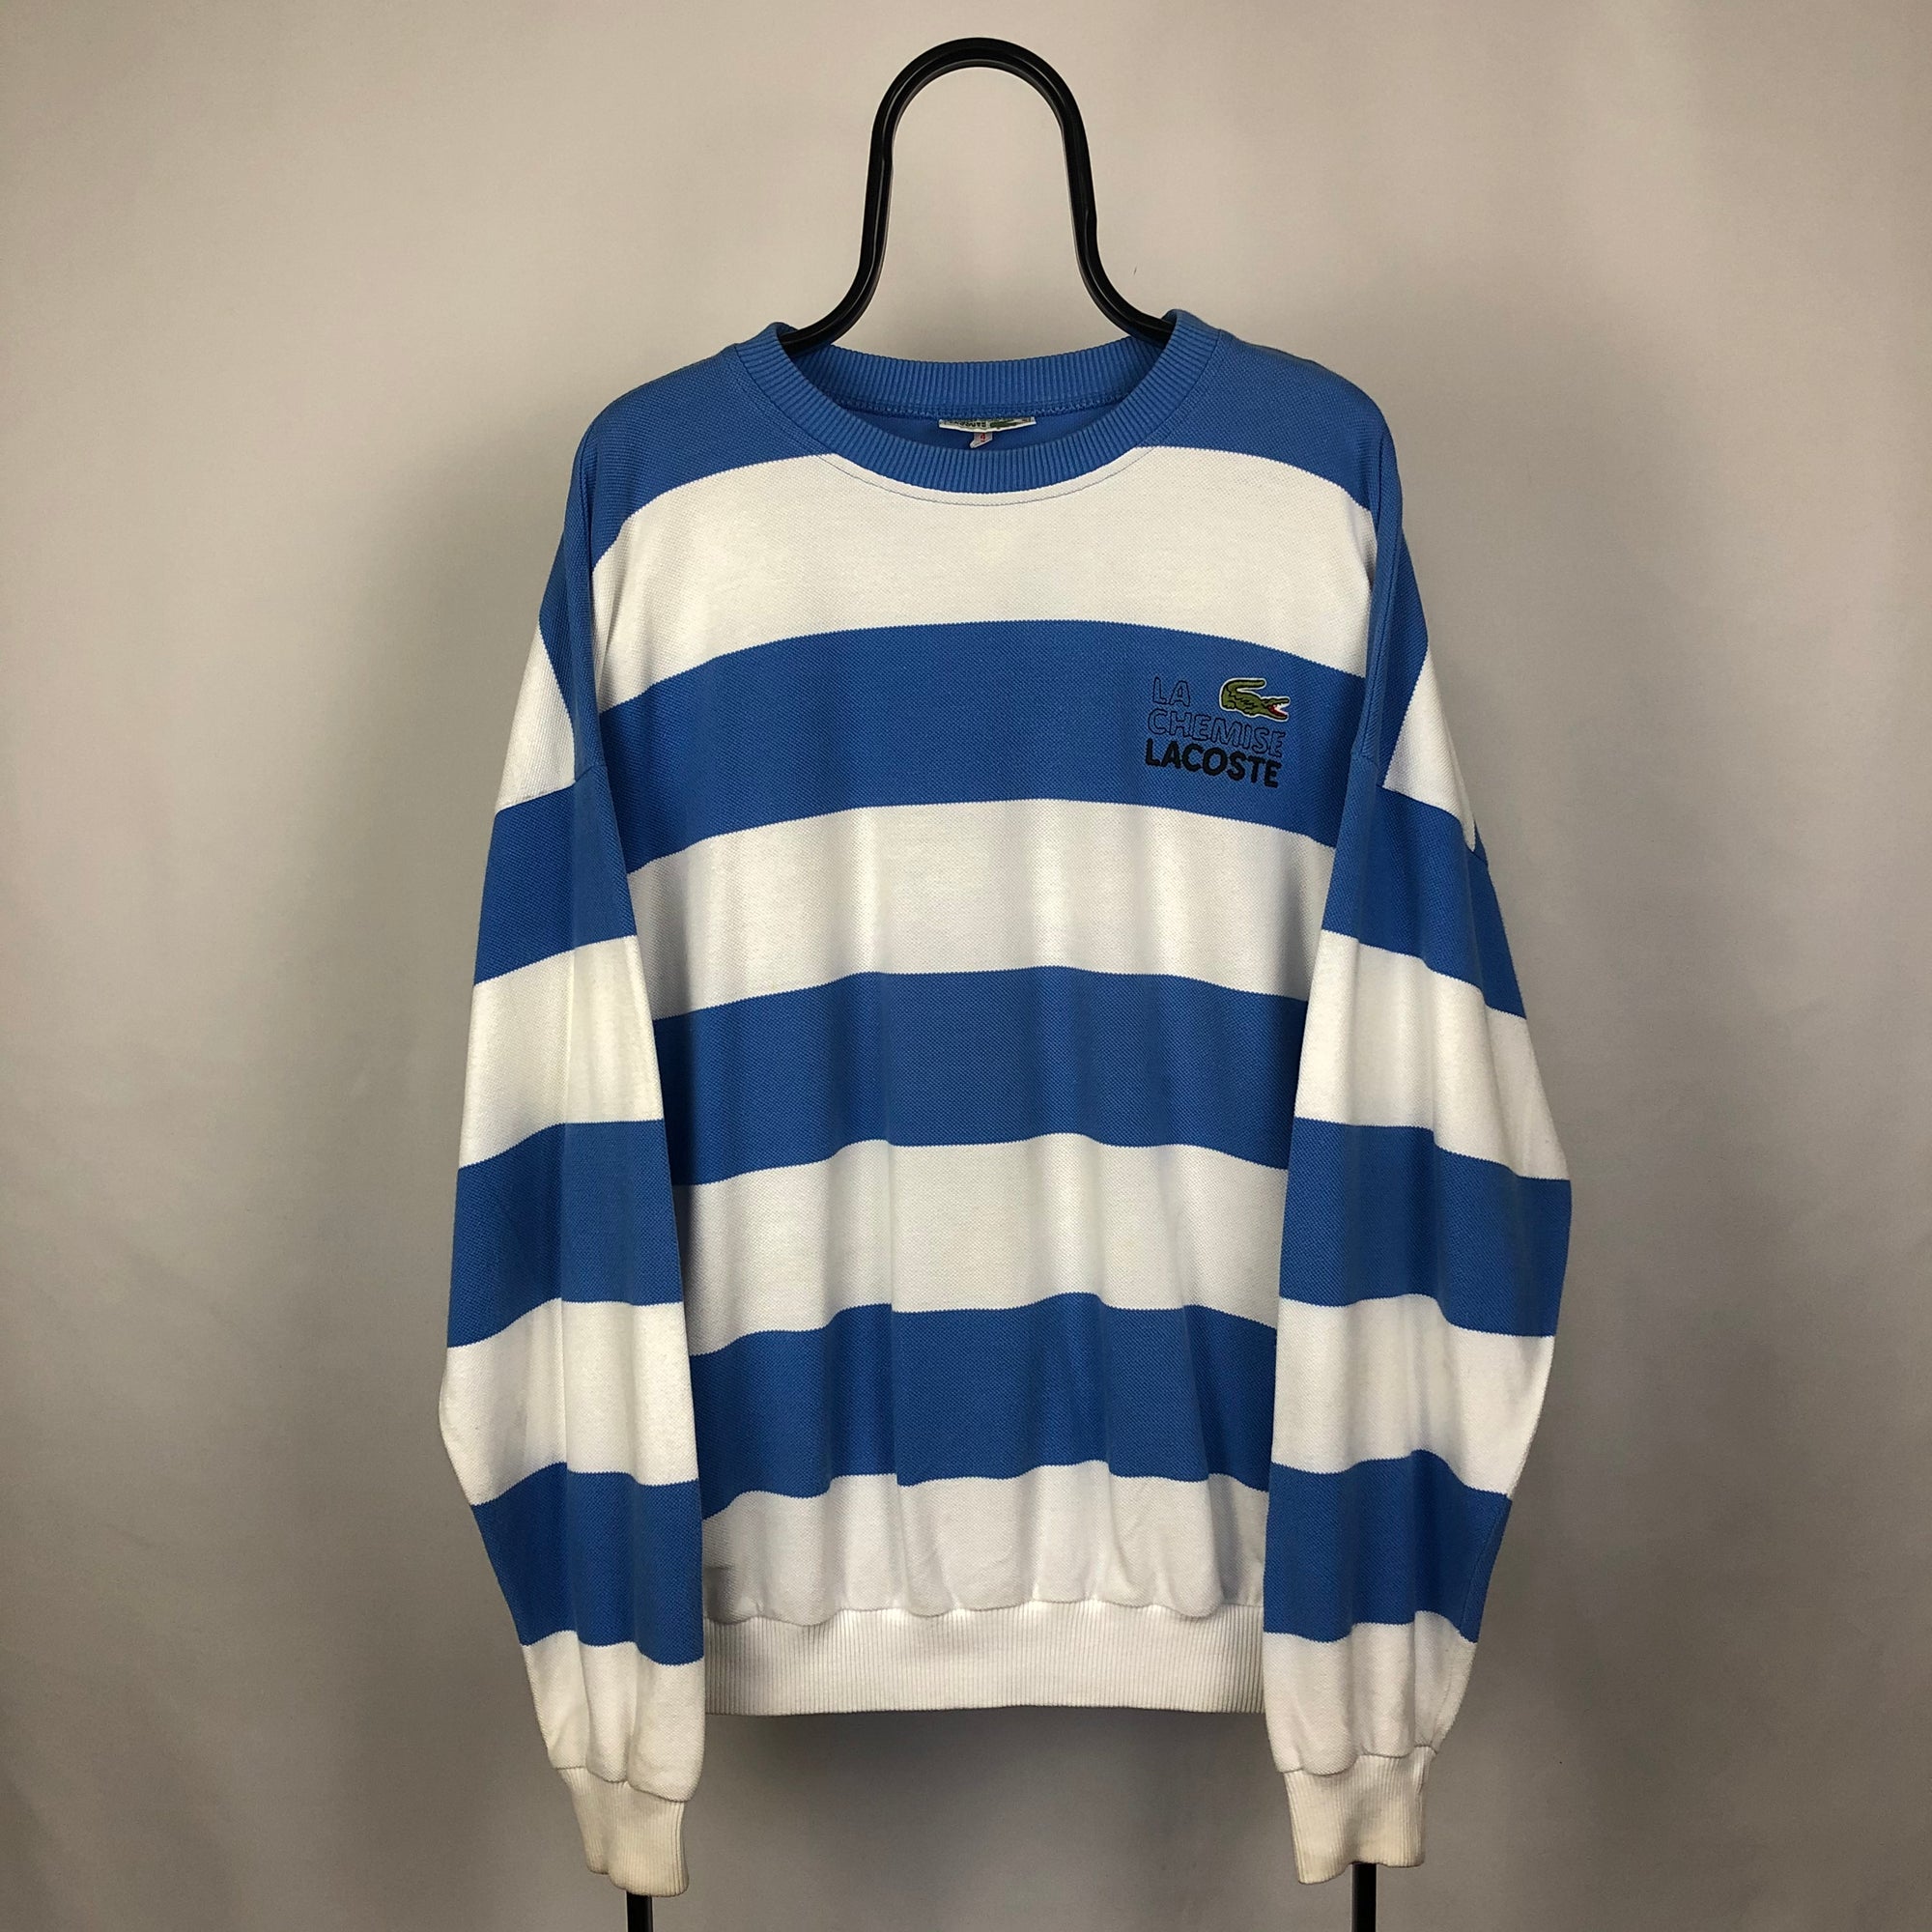 Lacoste Striped Sweatshirt - Men's Large/Women's XL